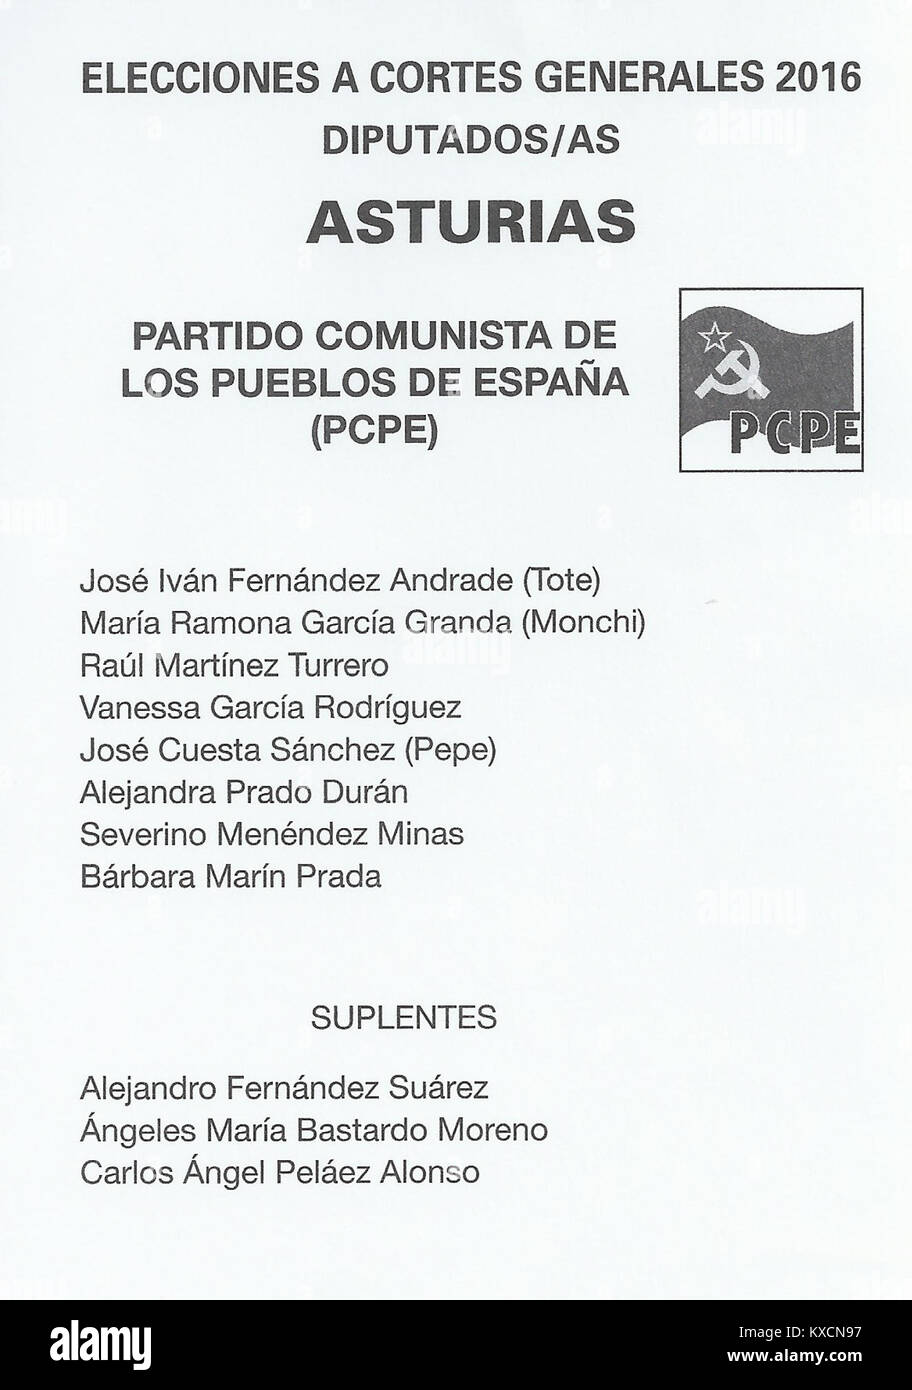 2016 Spanish General Elections Ballot - Asturias - Partido Comunista de los Pueblos de España (PCPE) Stock Photo